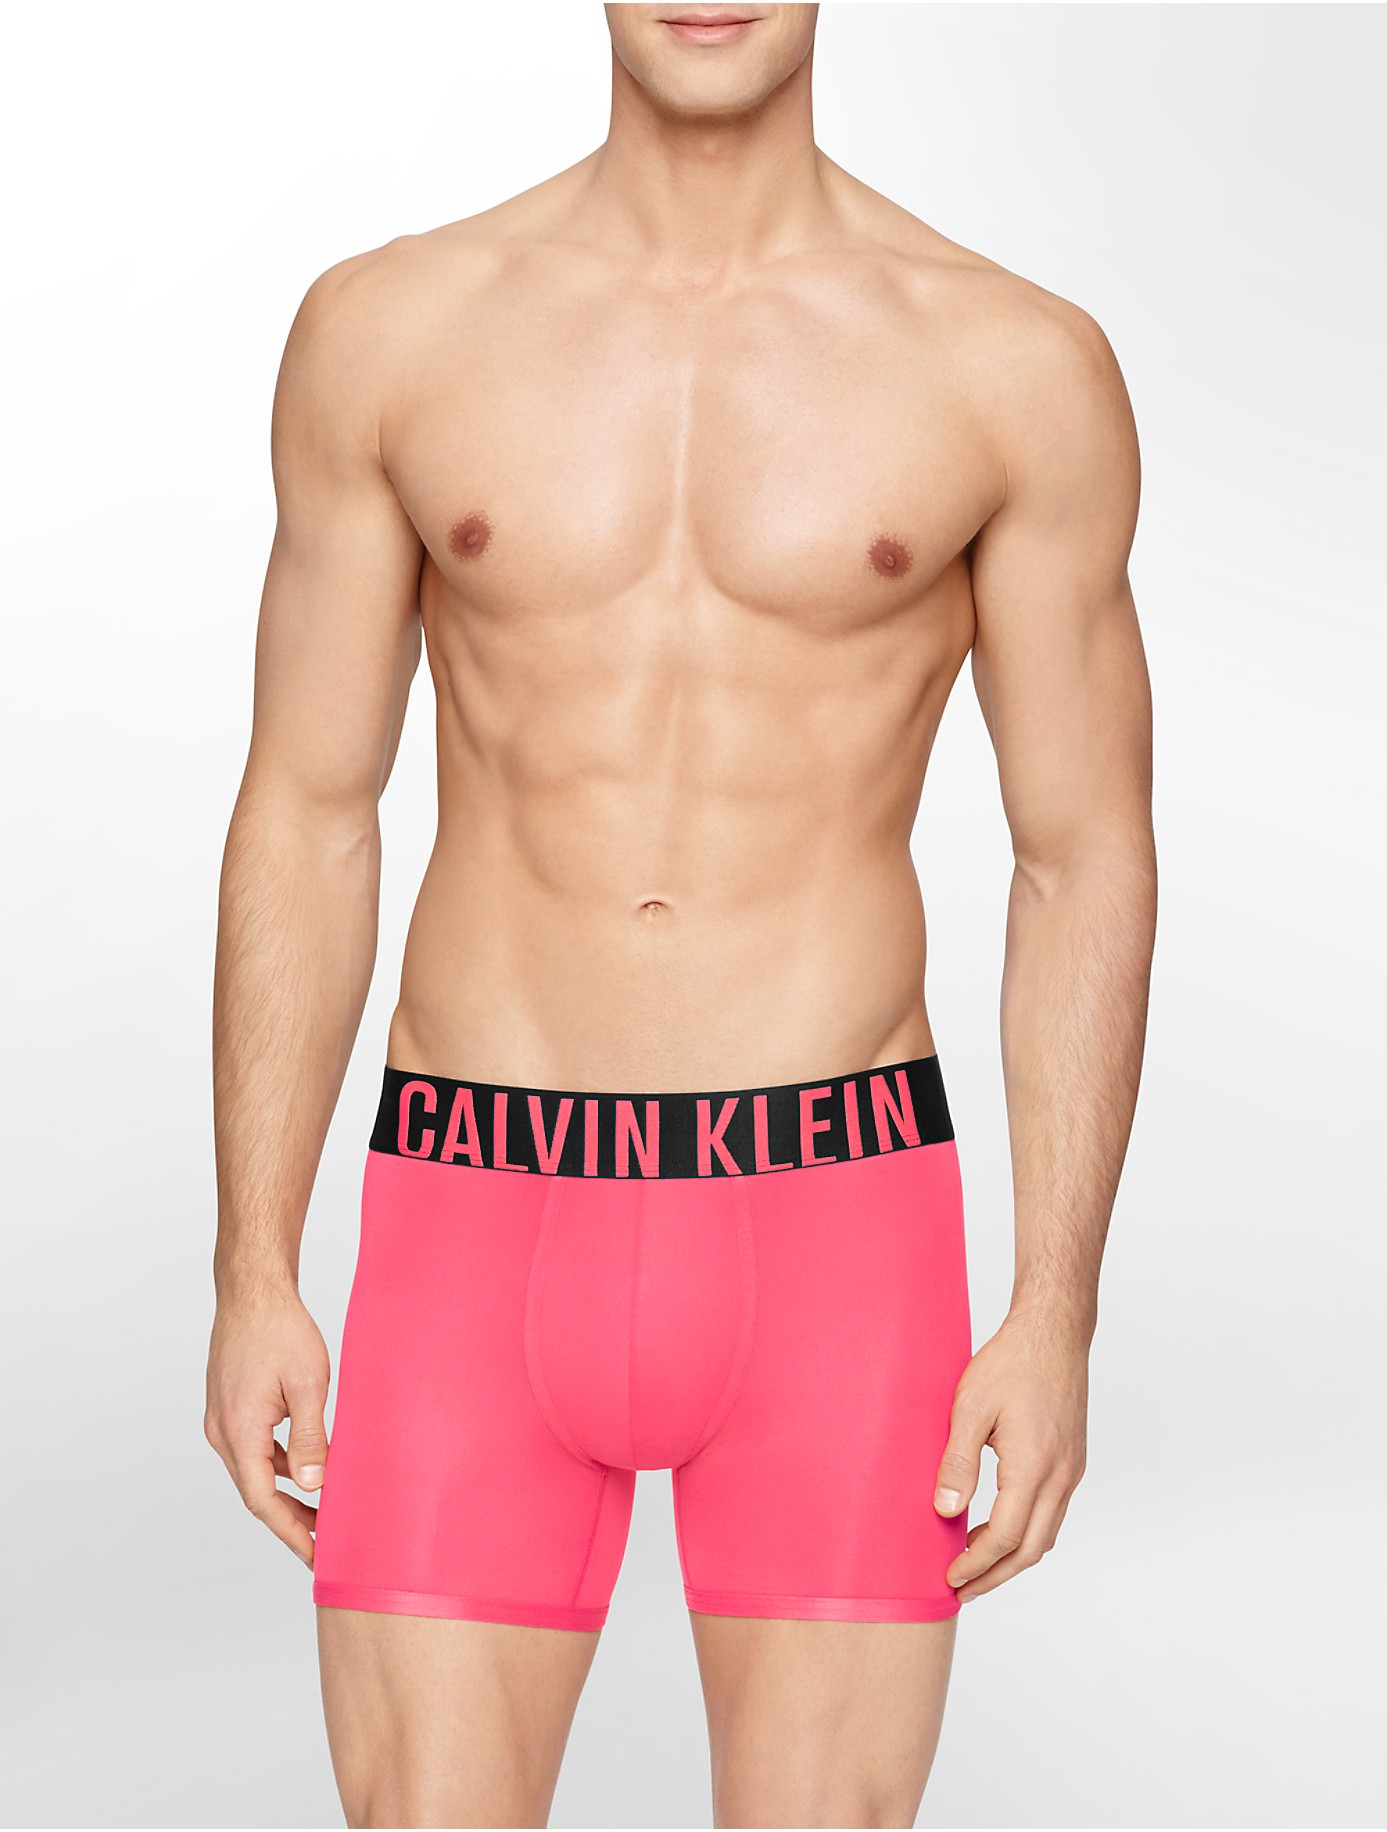 Calvin Klein Underwear Intense Power Micro Boxer Brief in Pink for Men